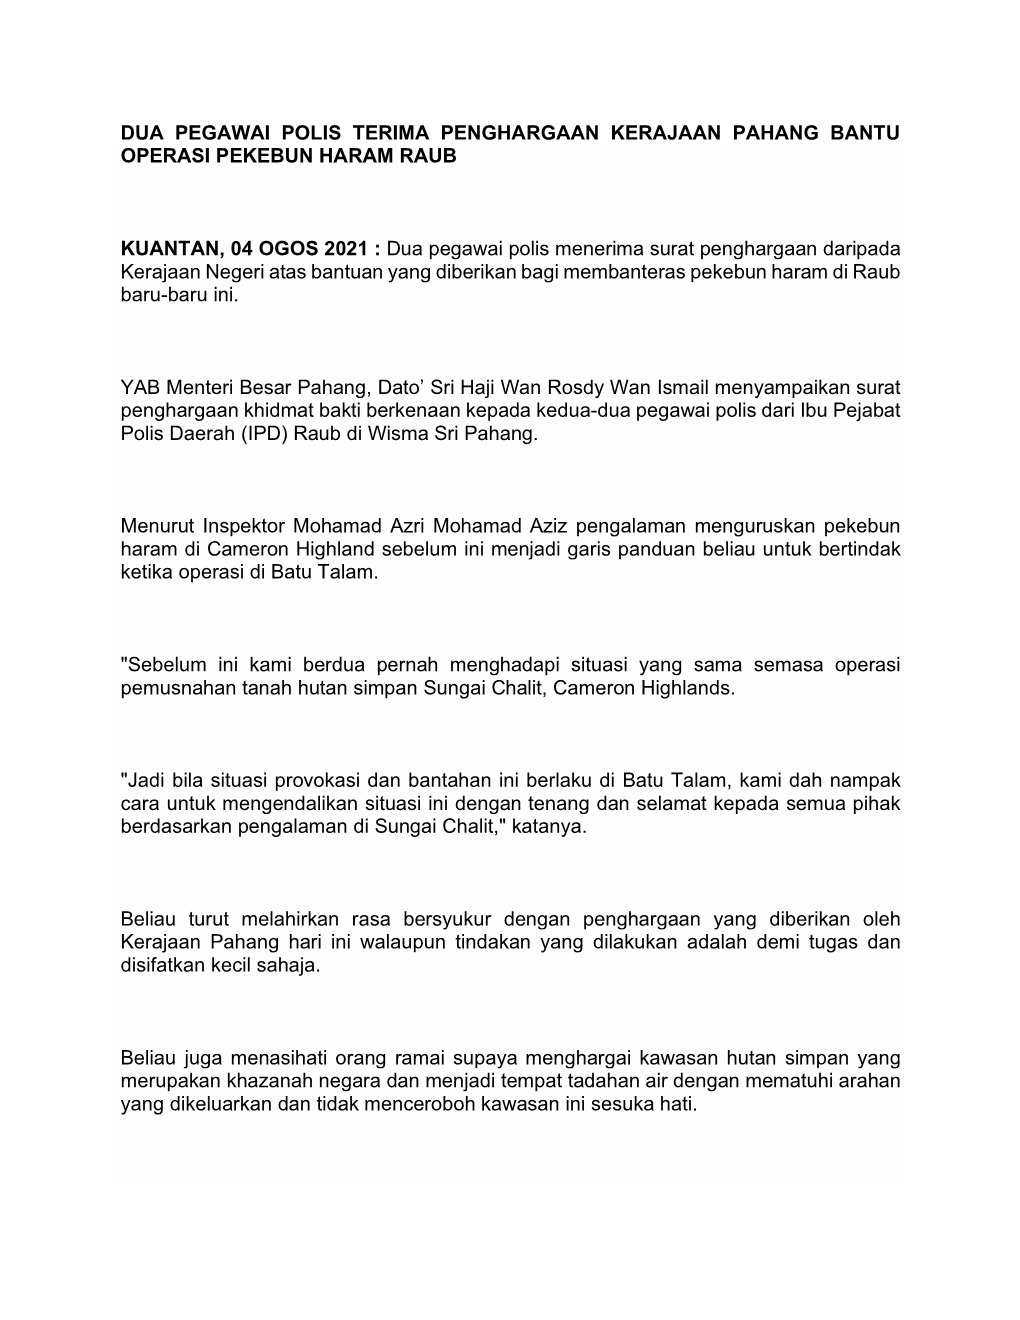 Dua Pegawai Polis Terima Penghargaan Kerajaan Pahang Bantu Operasi Pekebun Haram Raub